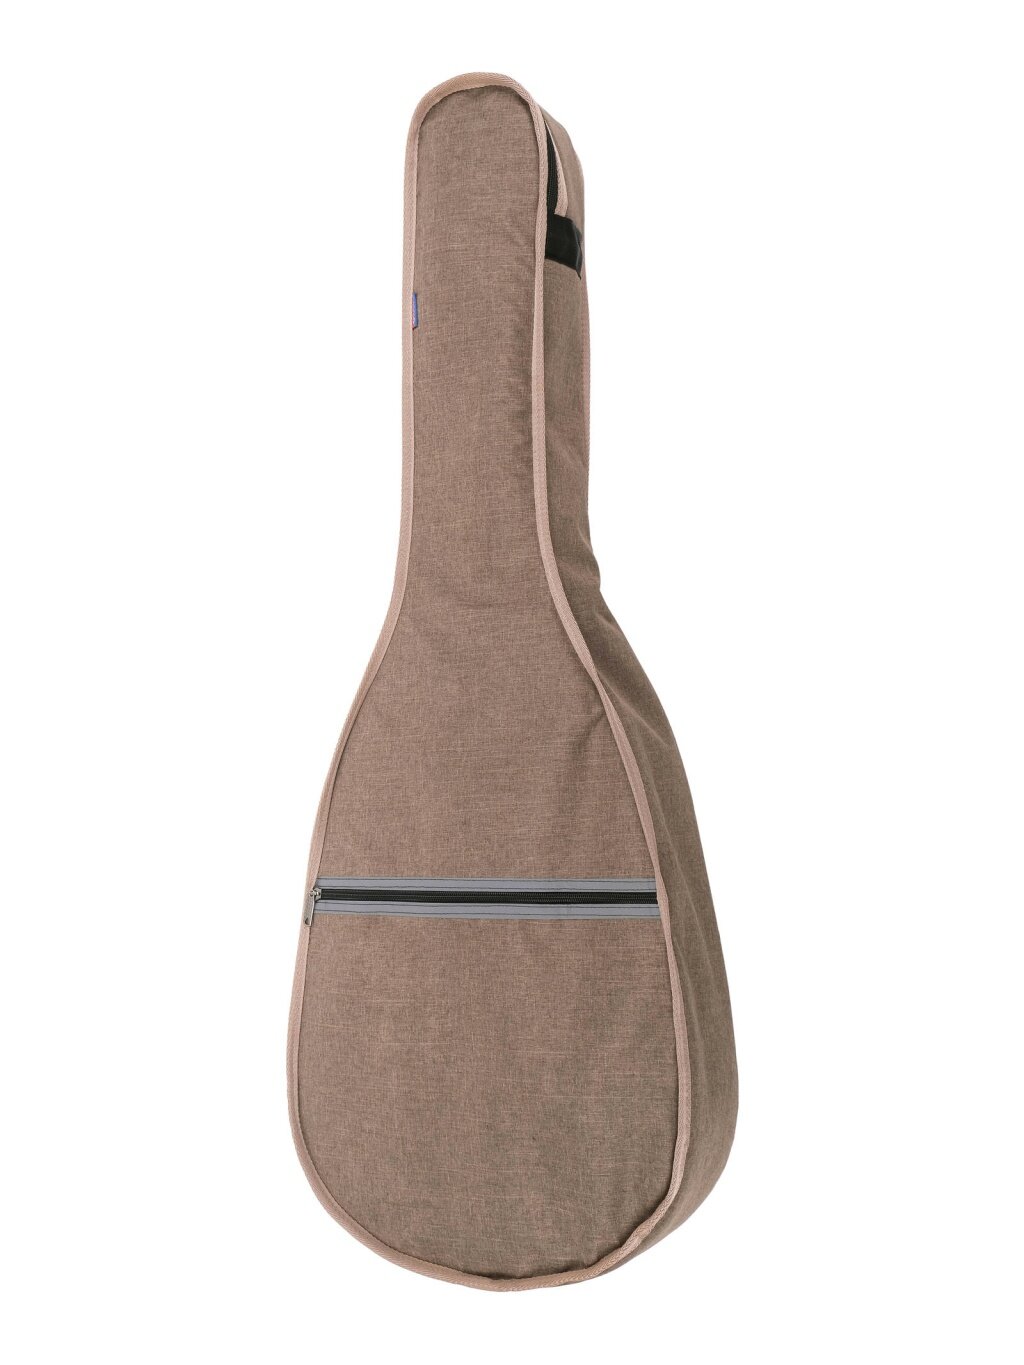 MLCG-46k Чехол для классической гитары коричневый Lutner